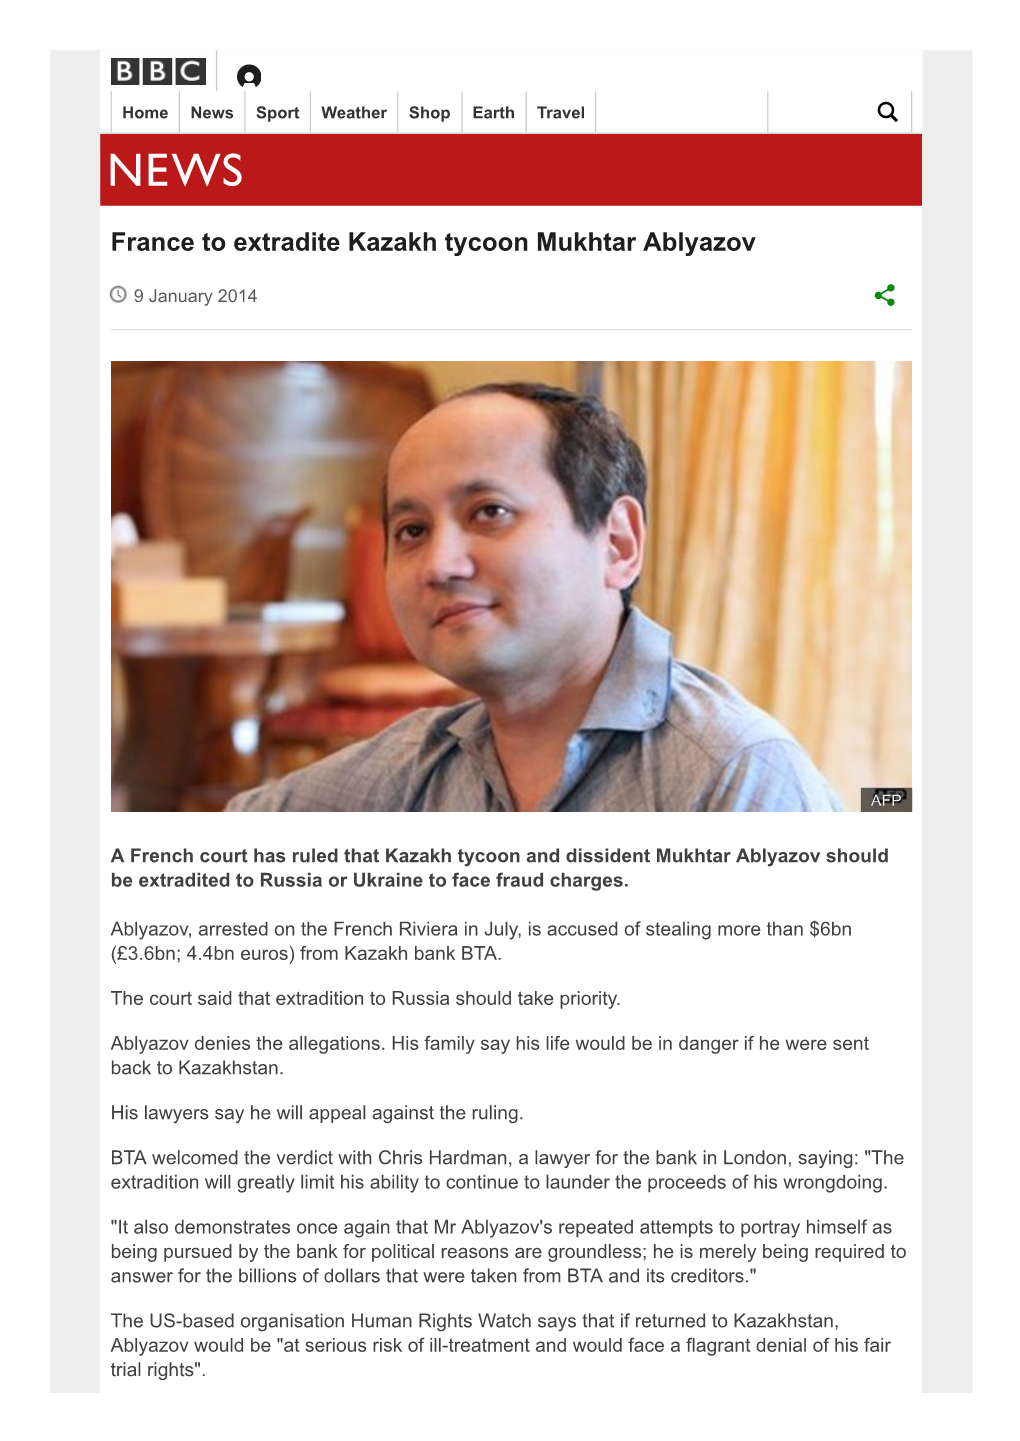 France to Extradite Kazakh Tycoon Mukhtar Ablyazov